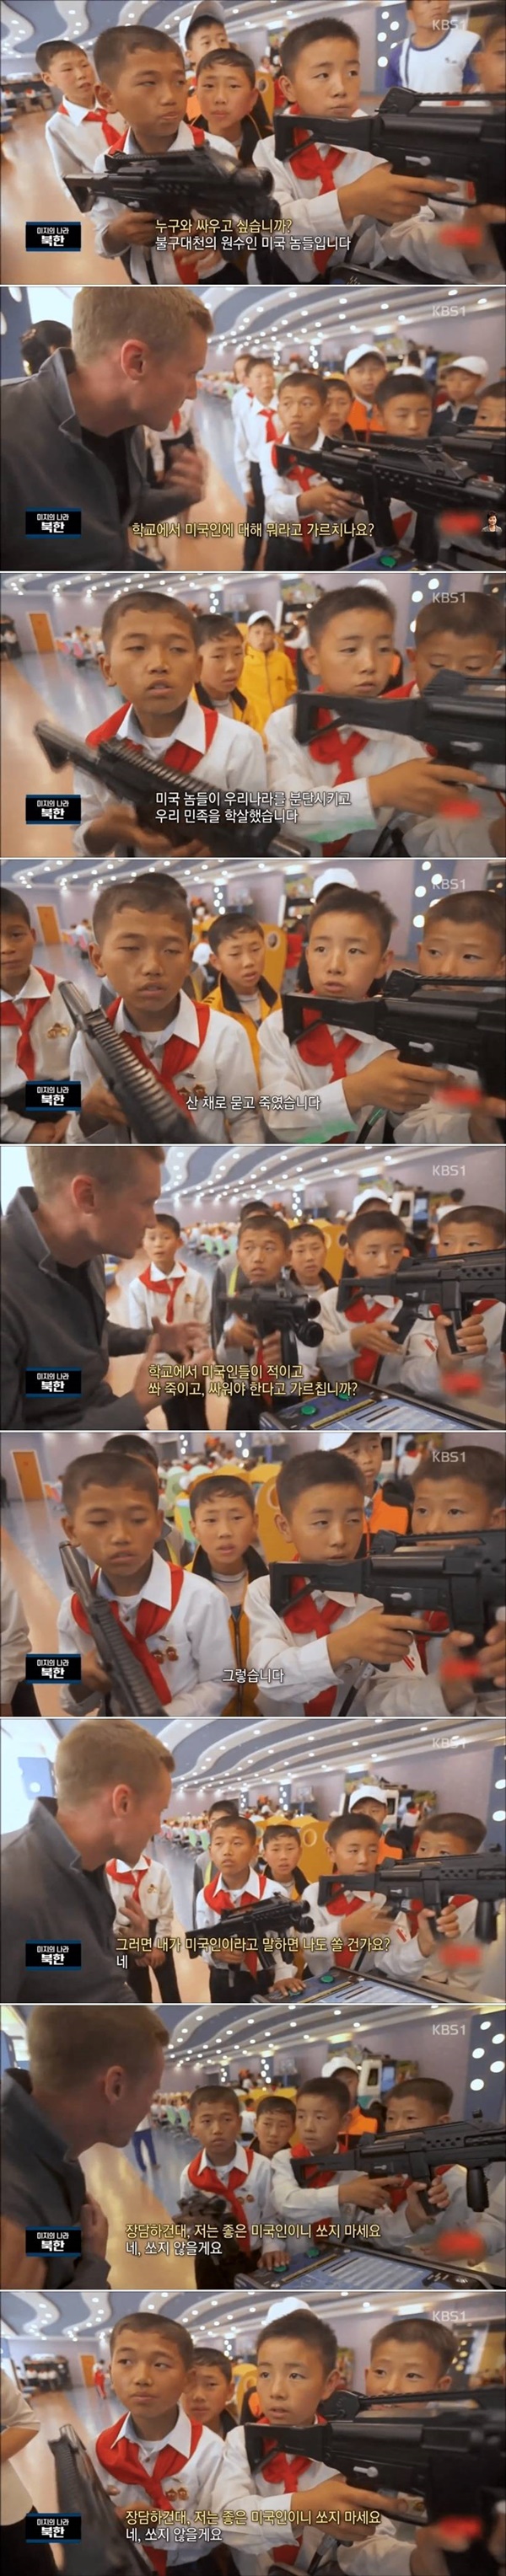 북한 어린이들